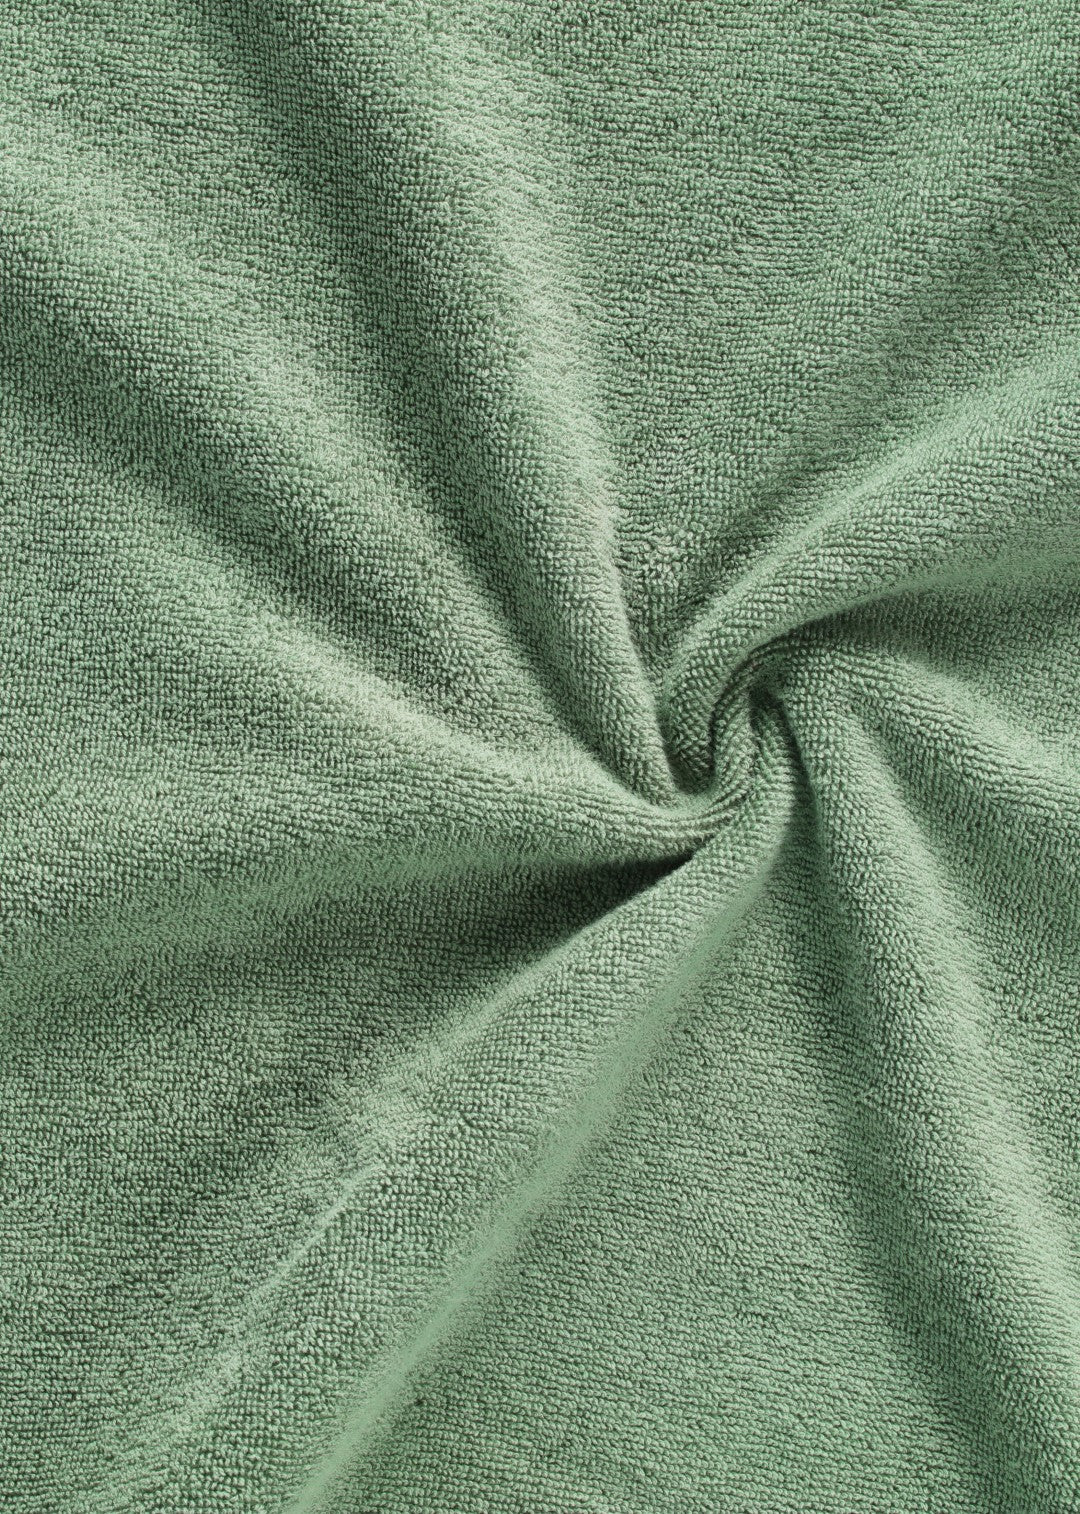 Handtuch Baumwolle Dunkelgrün 30 x 50 cm